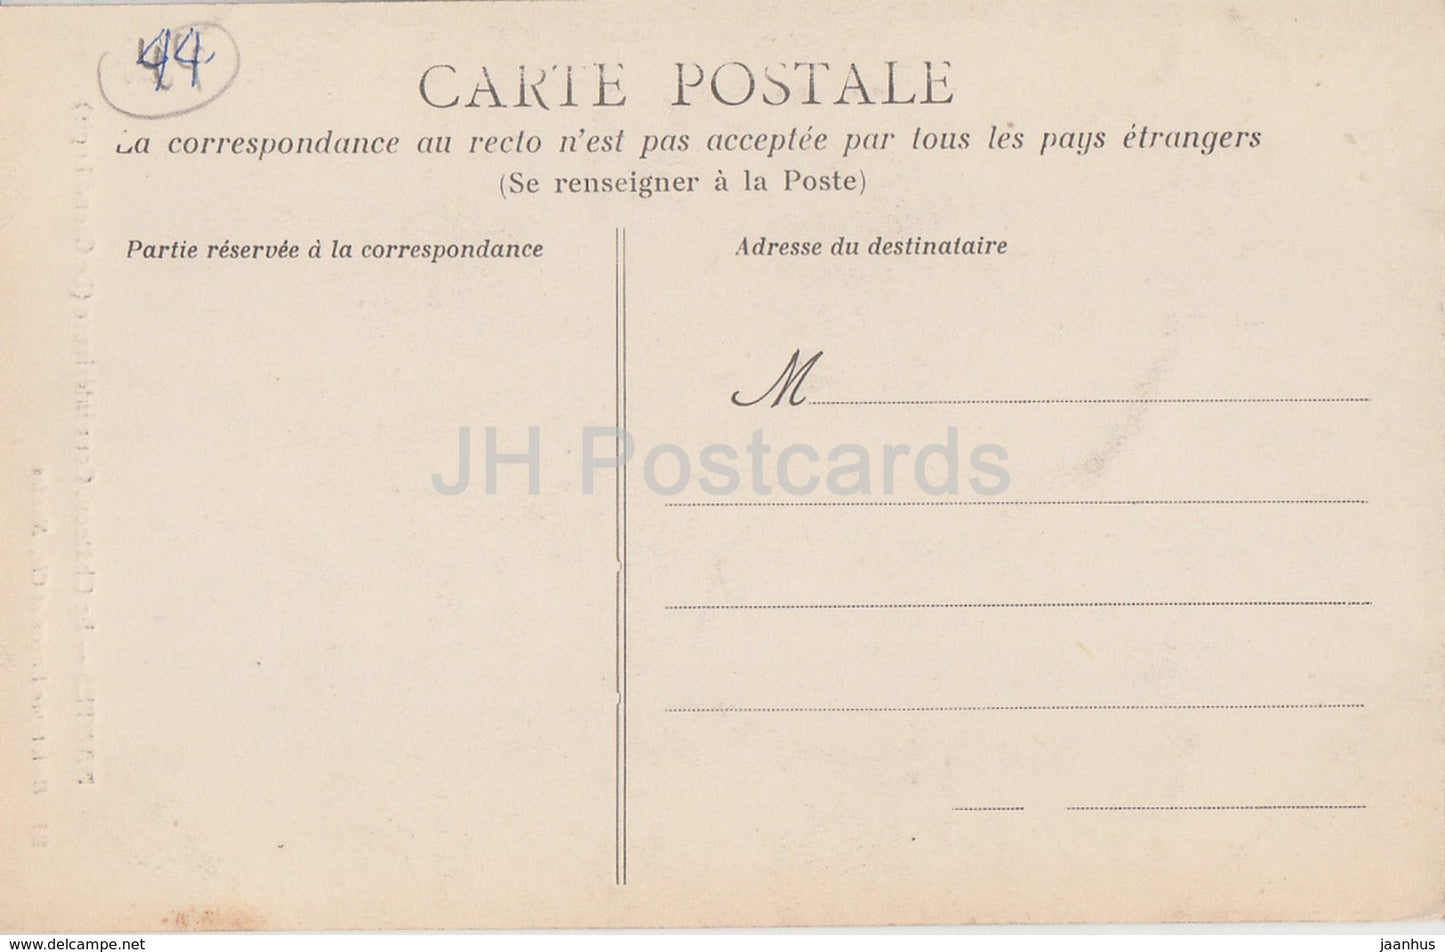 Nantes - Le Chateau - Cour Interieure - Le Grand Logis - 81 - alte Postkarte - Frankreich - unbenutzt